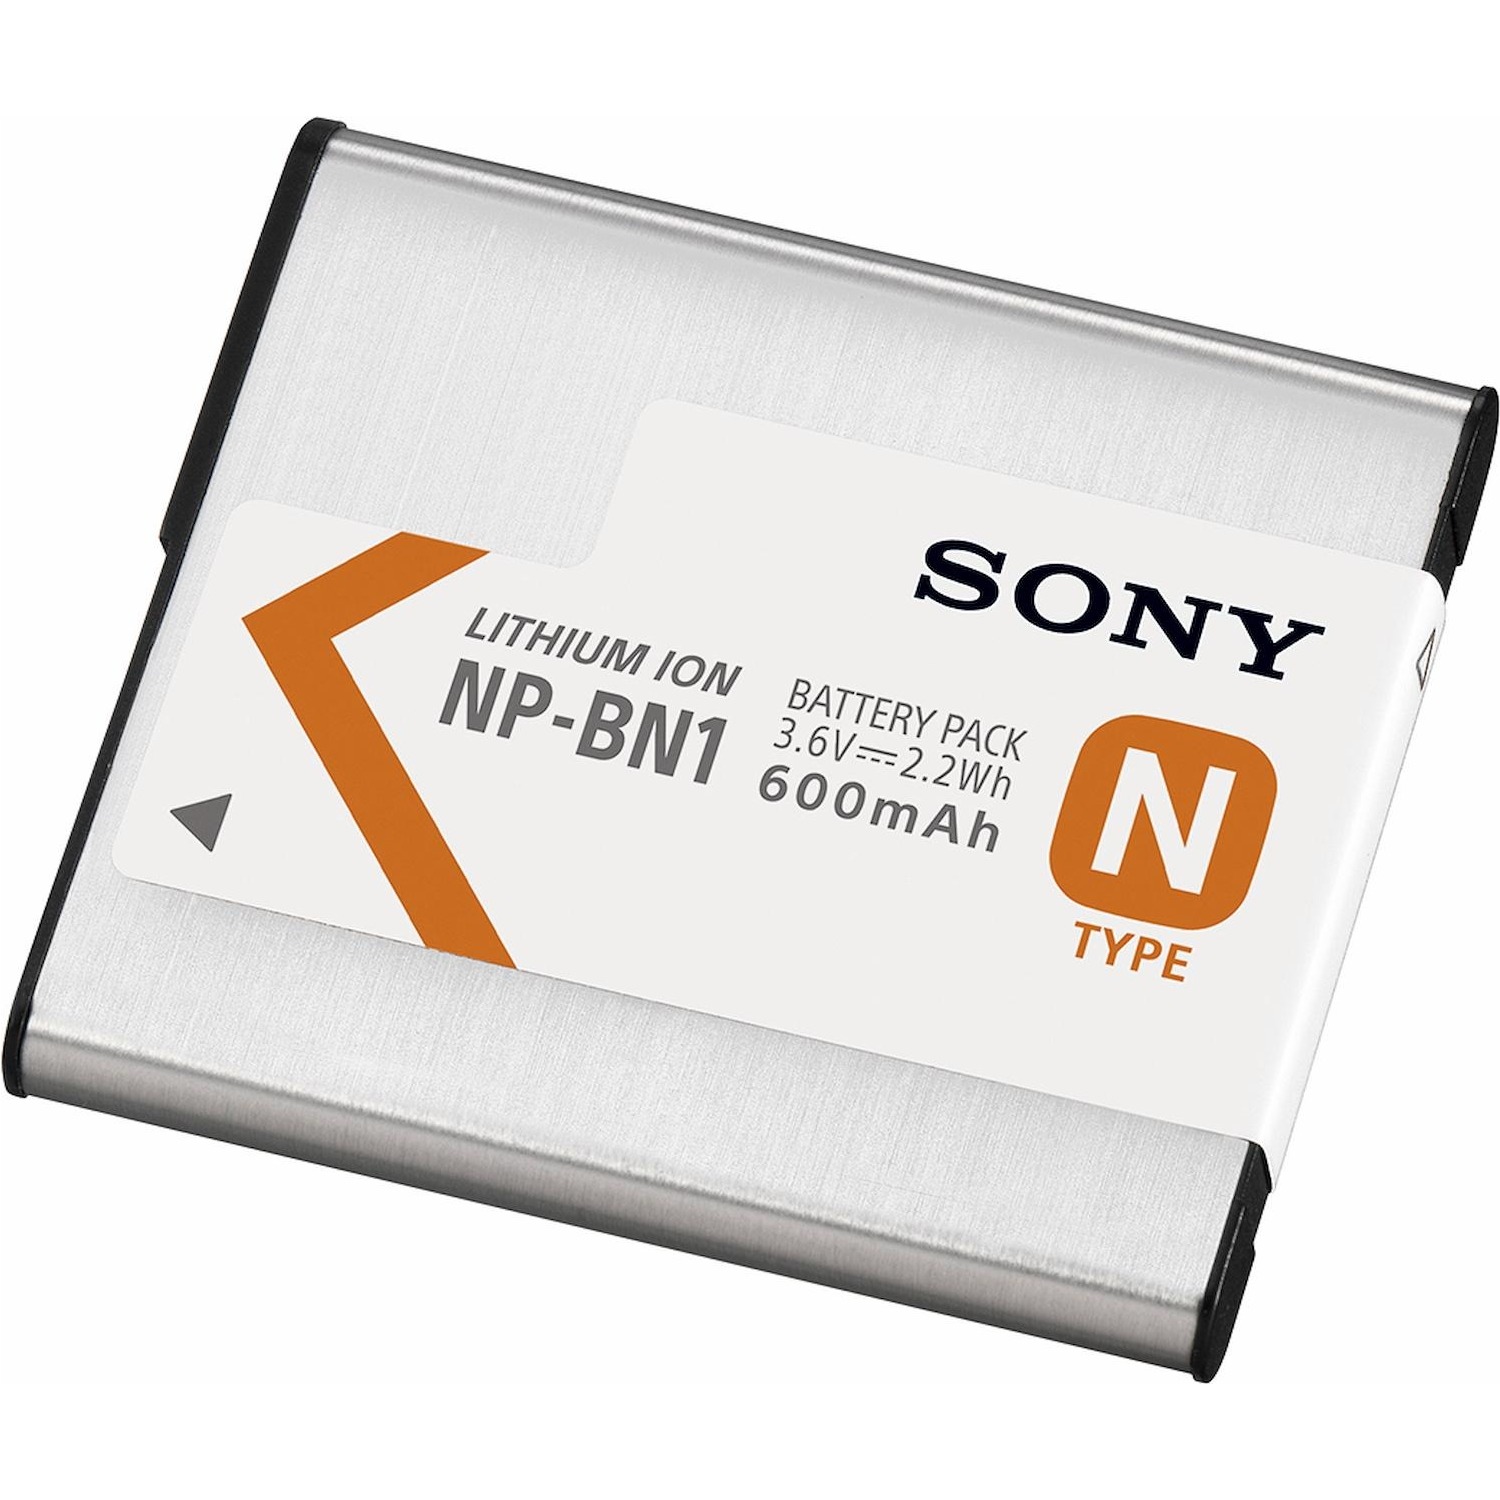 Immagine per Batteria Sony NPBNC1.CE7 per fotocamera DSCW830 da DIMOStore